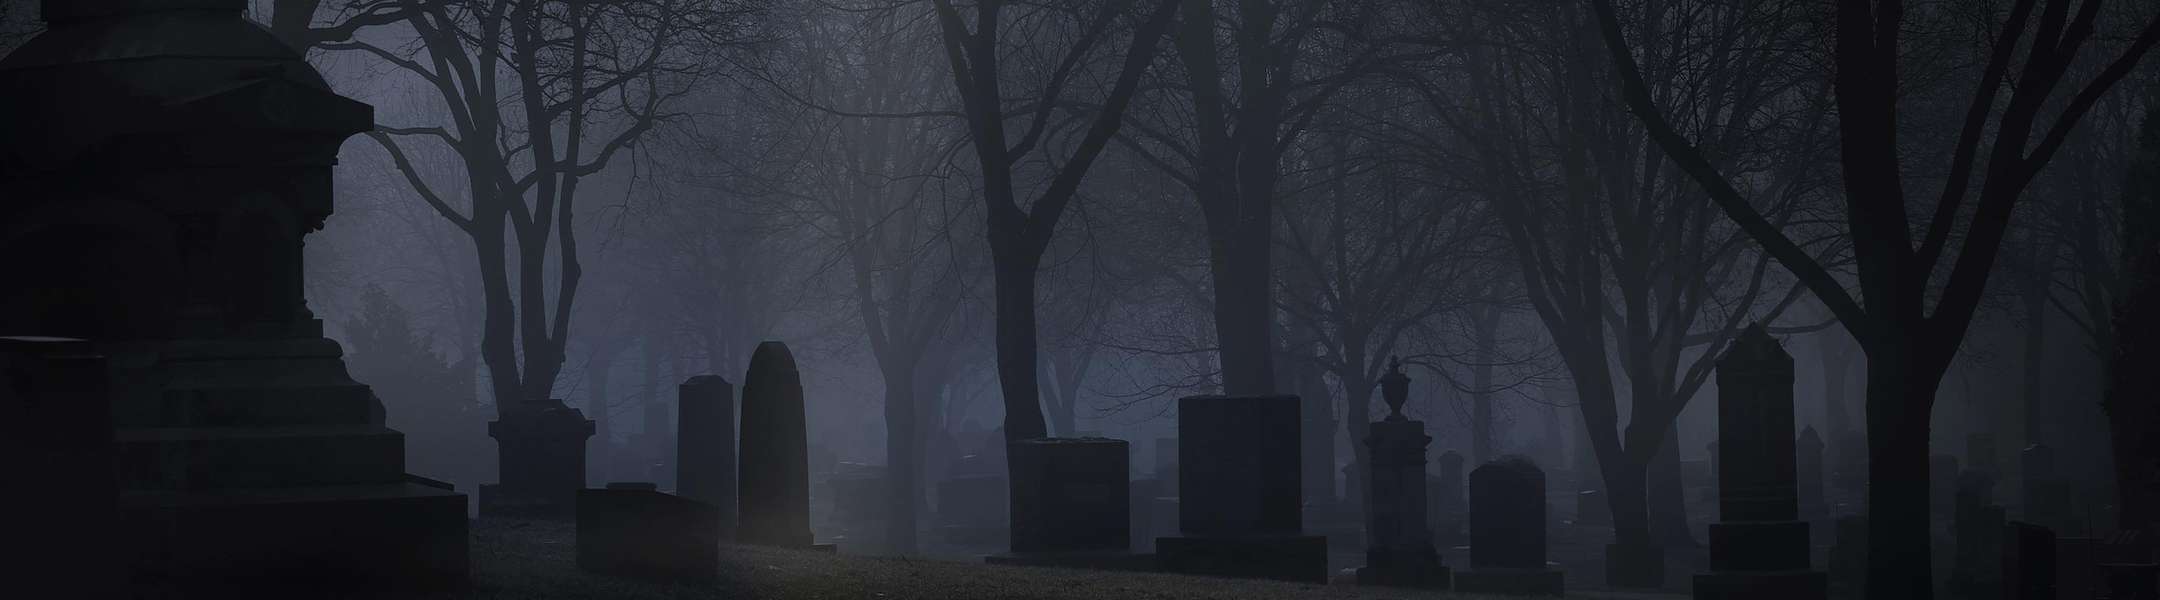 Uno de los cementerios encantados que visitamos en nuestros Tours grupales de fantasmas